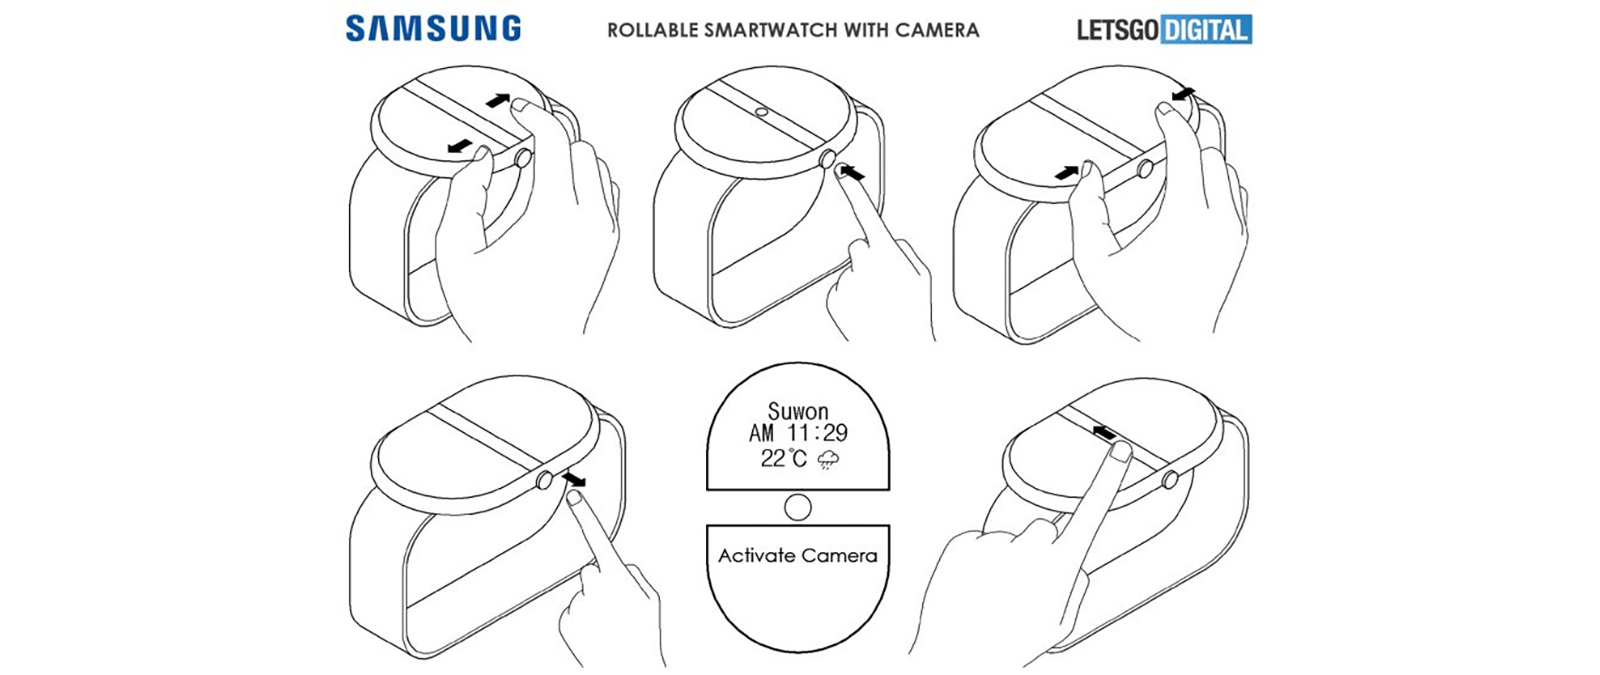 Paten jam tangan pintar Samsung yang menunjukkan jam tangan dengan tampilan yang memanjang.